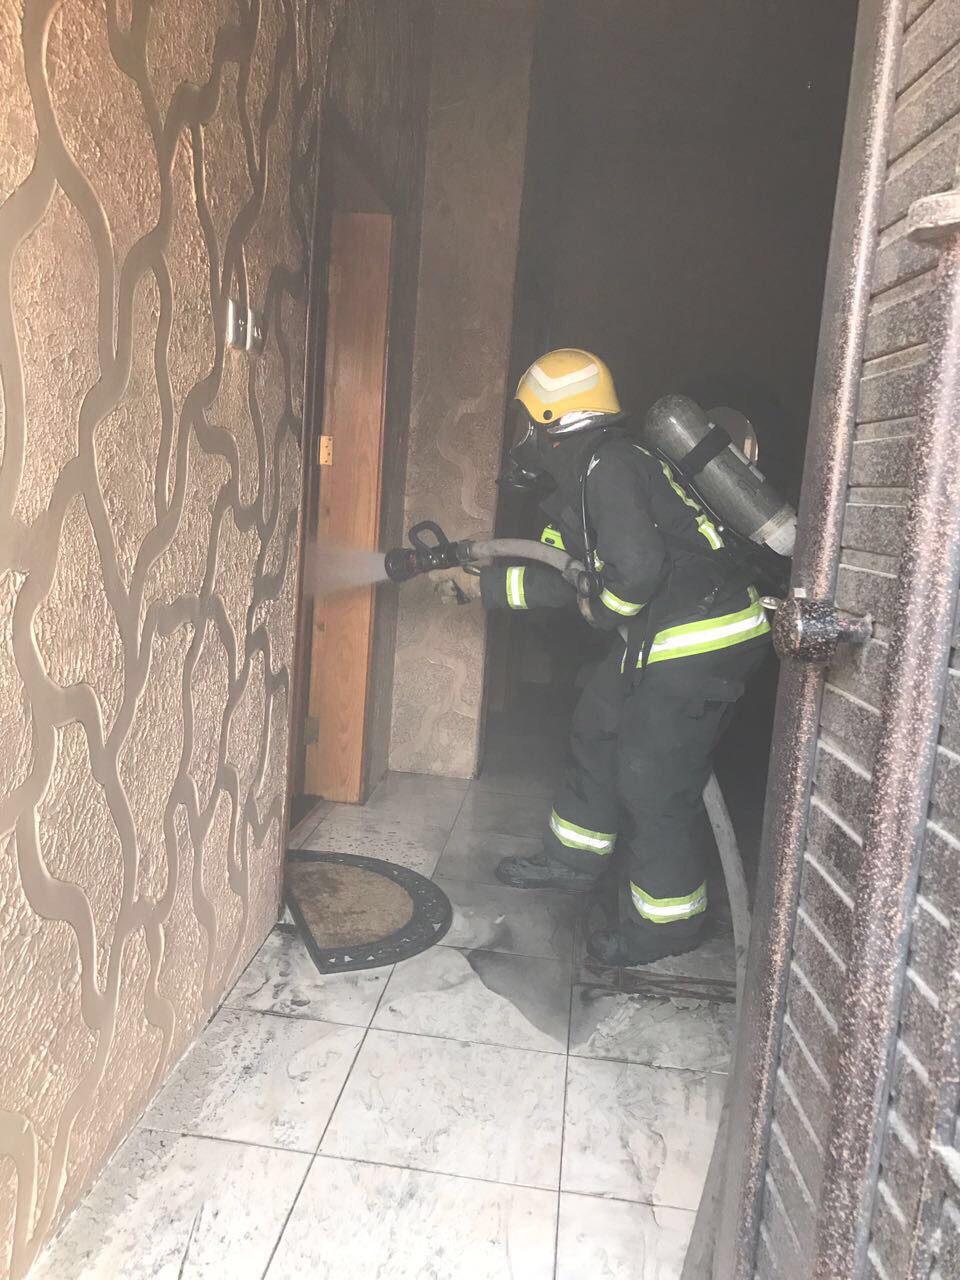 شاحن جوال يحرق غرفة في منزل بحي الراقي بخميس مشيط